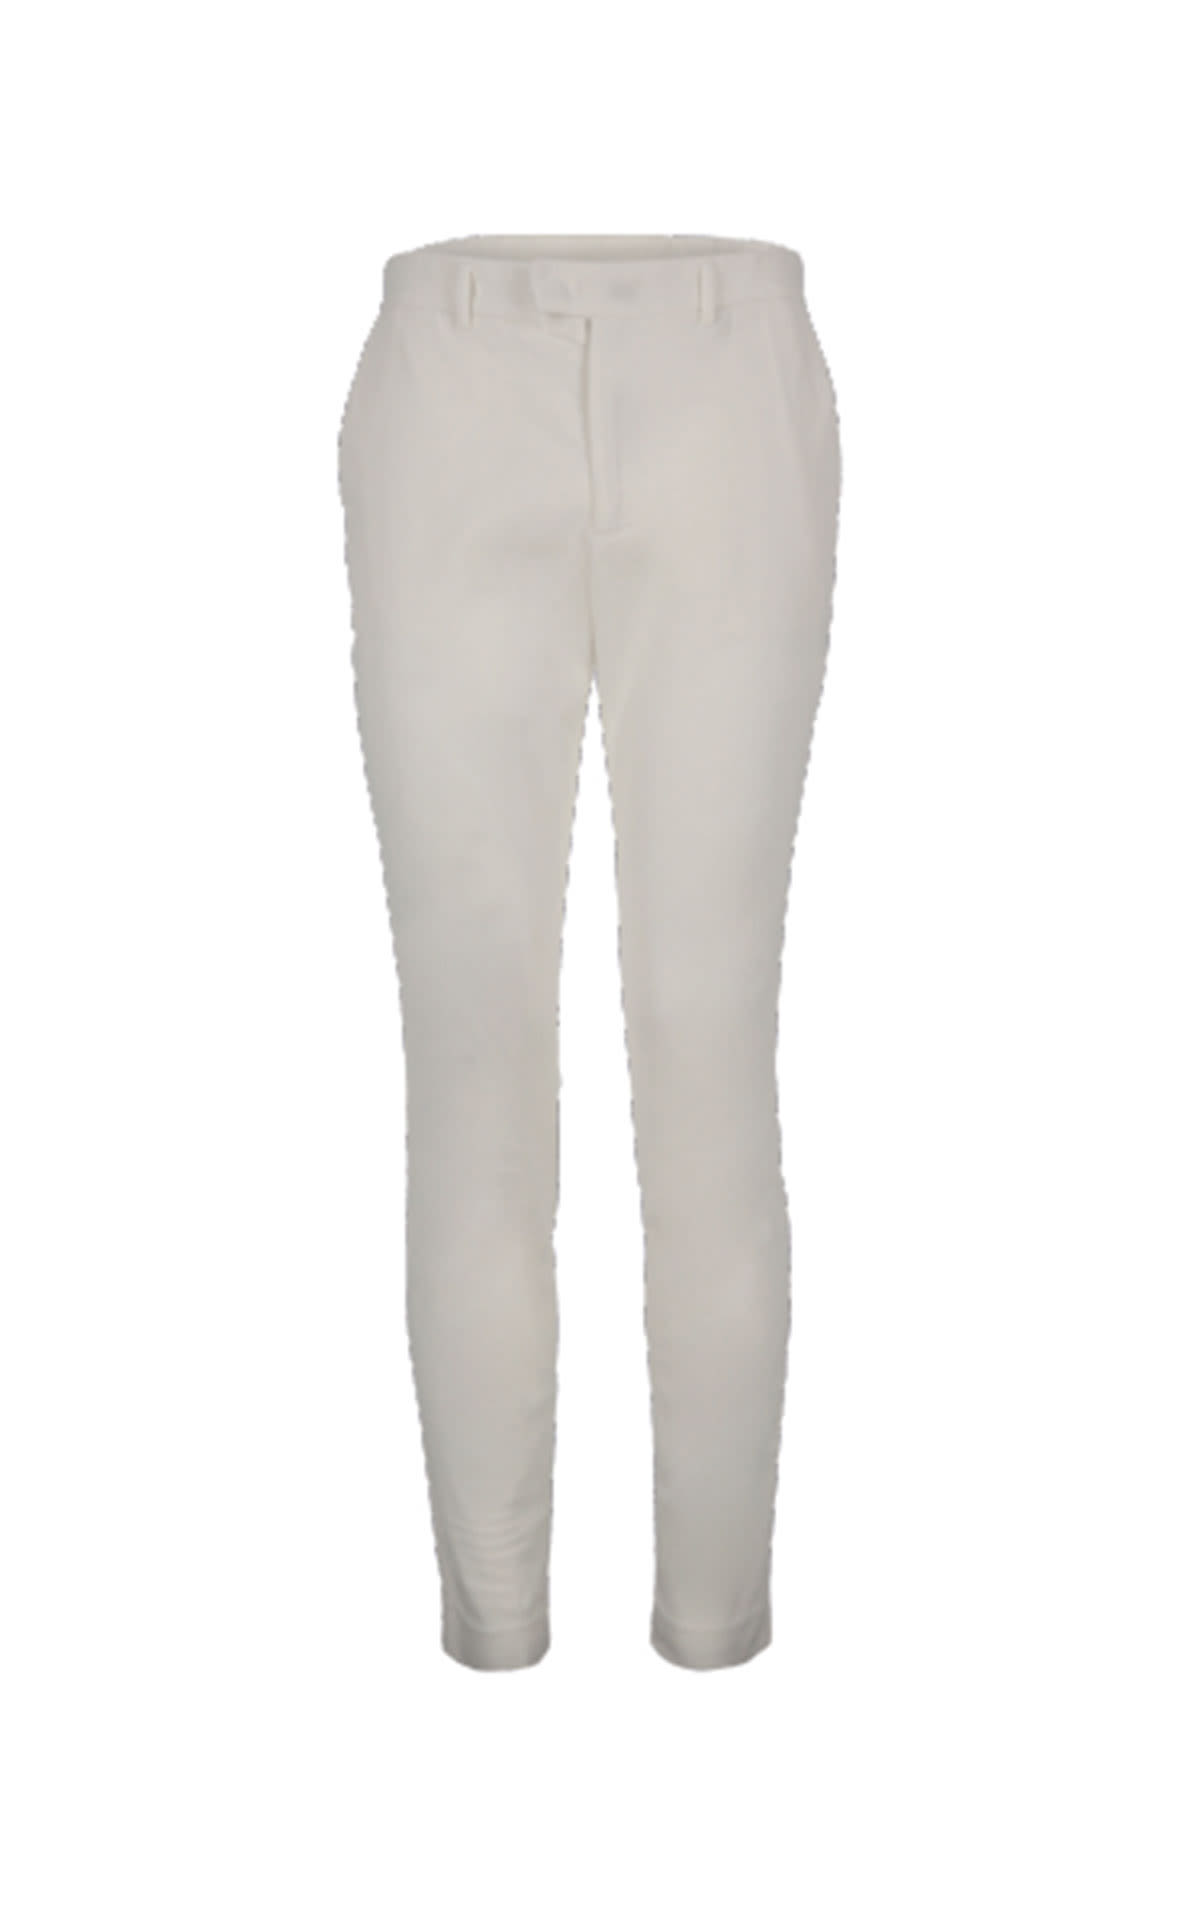 Yeloalf cotton pants white Ecoalf